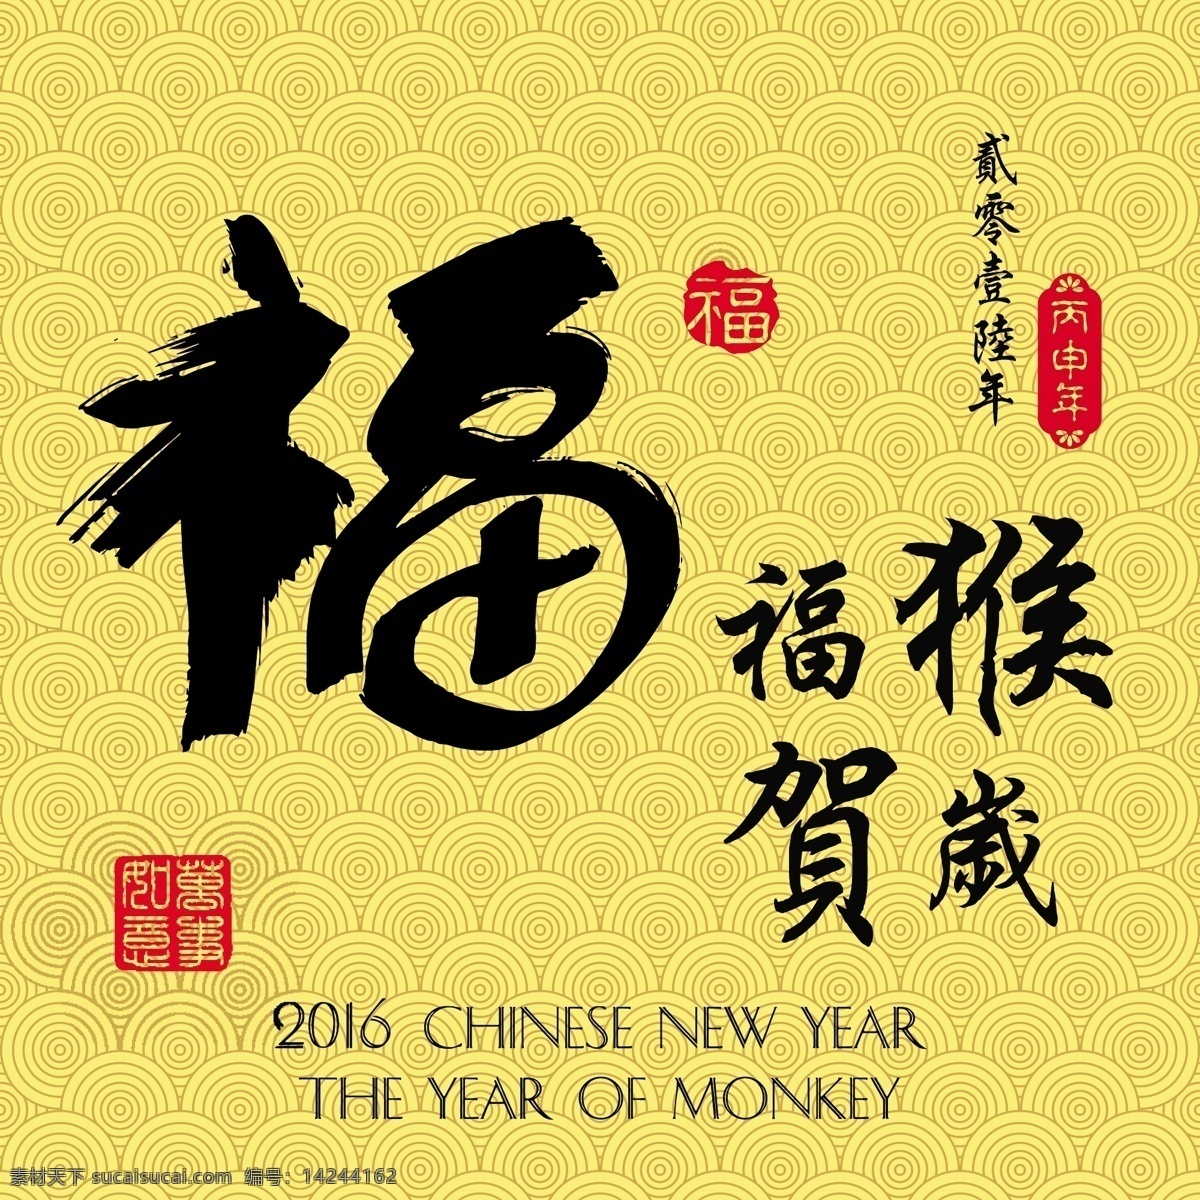 中国 传统 春节 新年 猴年 矢量 设计素材 过年 福 简约 卡通 平面素材